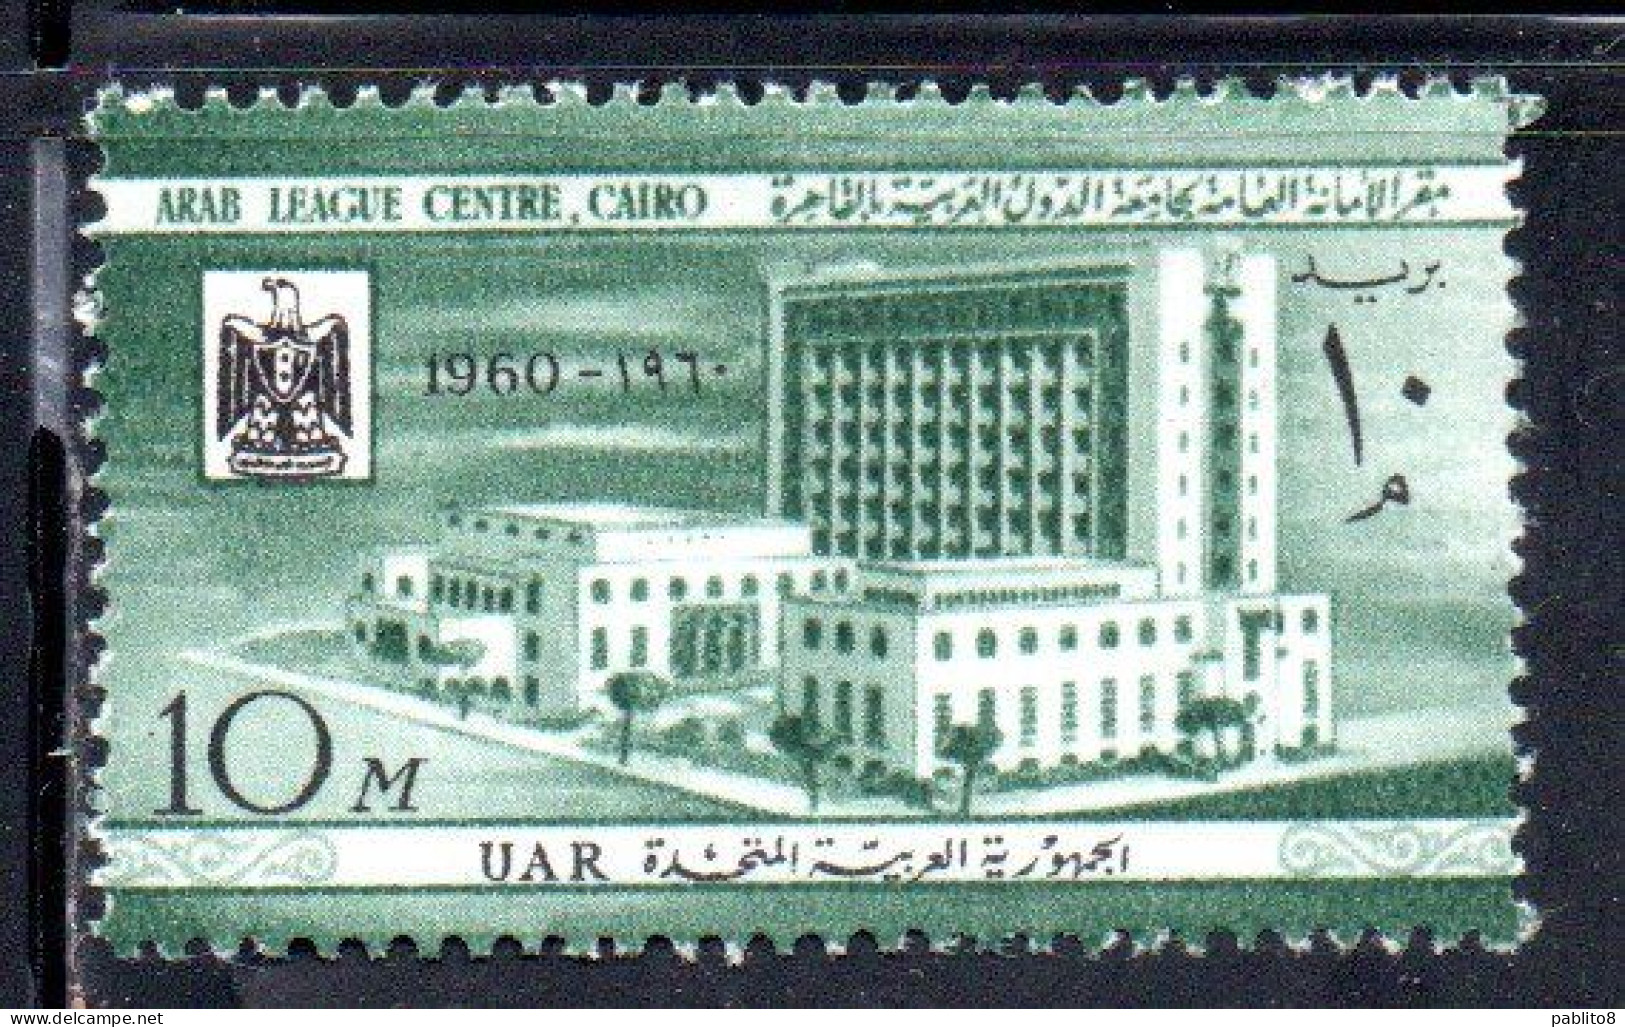 UAR EGYPT EGITTO 1960 OPEN ARAB LEAGUE CENTER AND POSTAL MUSEUM CAIRO 10m MNH - Nuevos